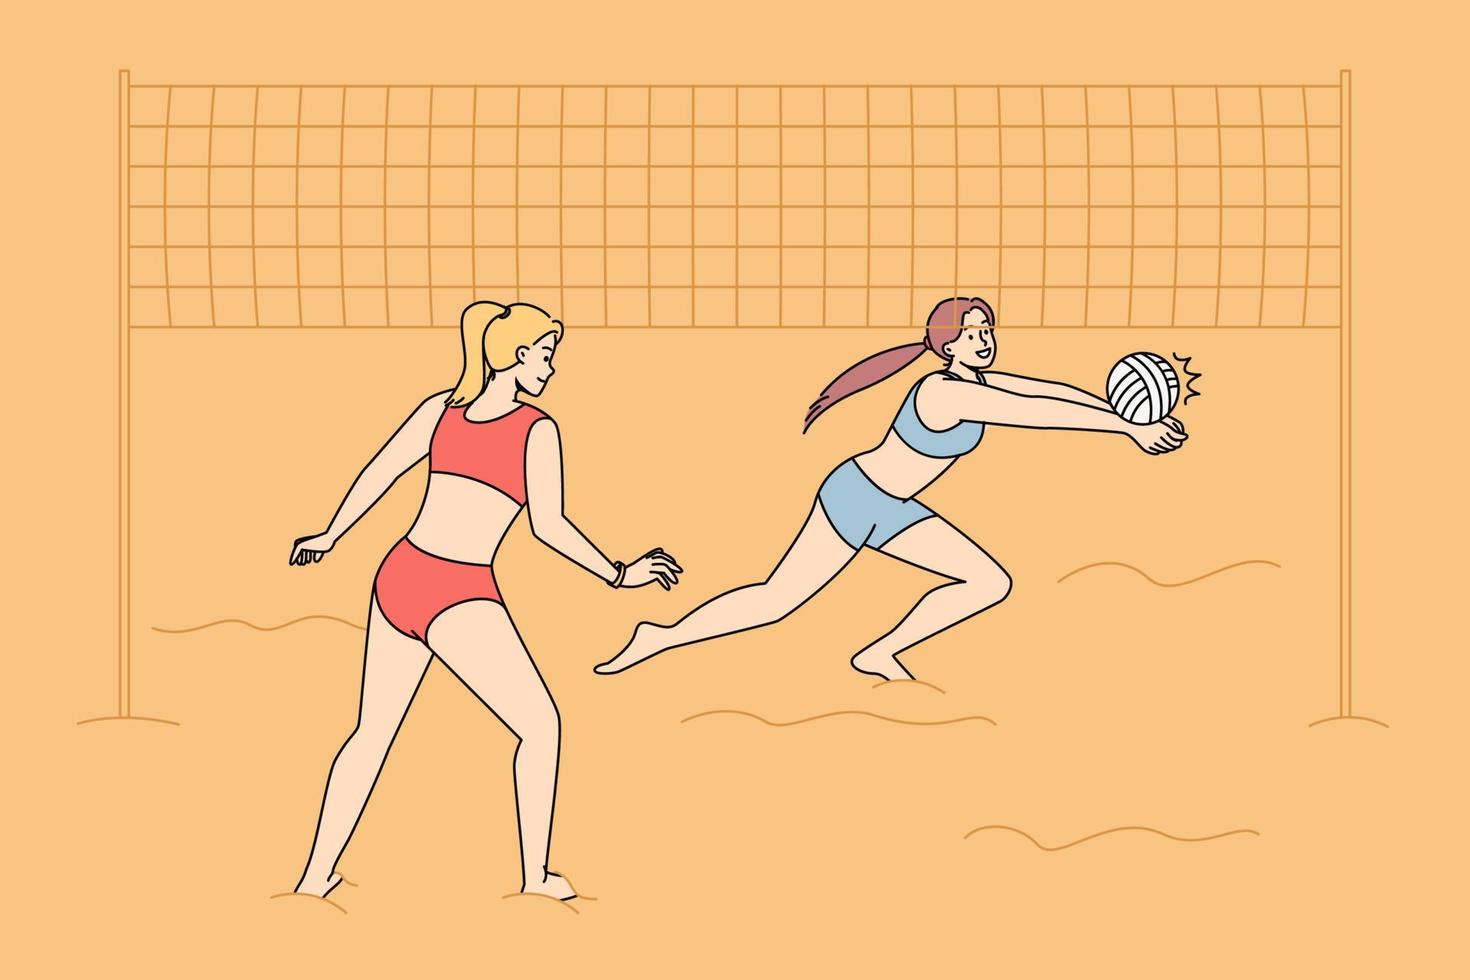 femmes en maillot de bain jouant au volley-ball sur la plage. filles actives souriantes en bikini impliquées dans une activité sportive au bord de la mer pendant les vacances d'été. illustration vectorielle. vecteur